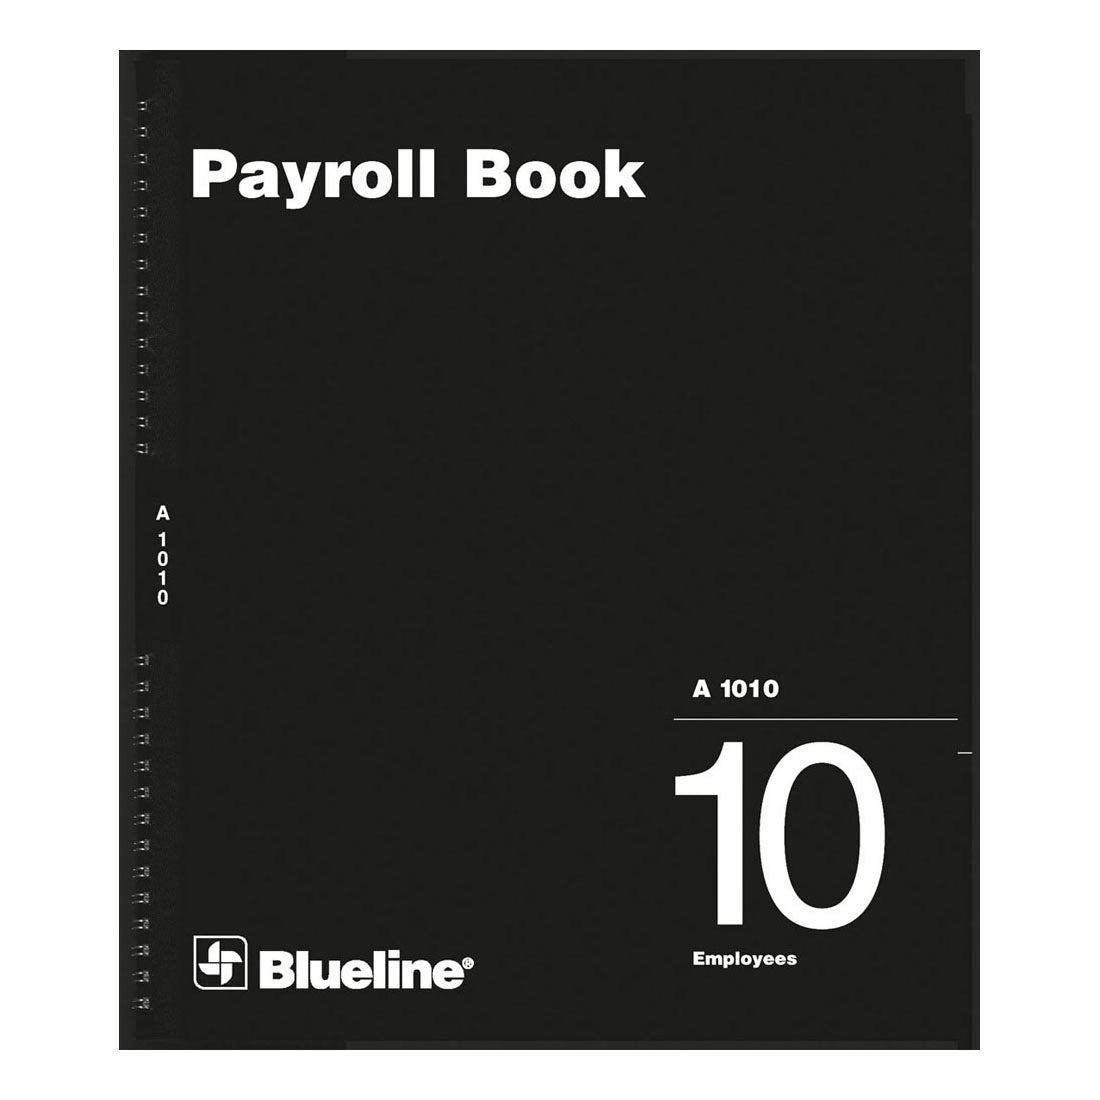 Payroll Book, 10 Employees, A1010